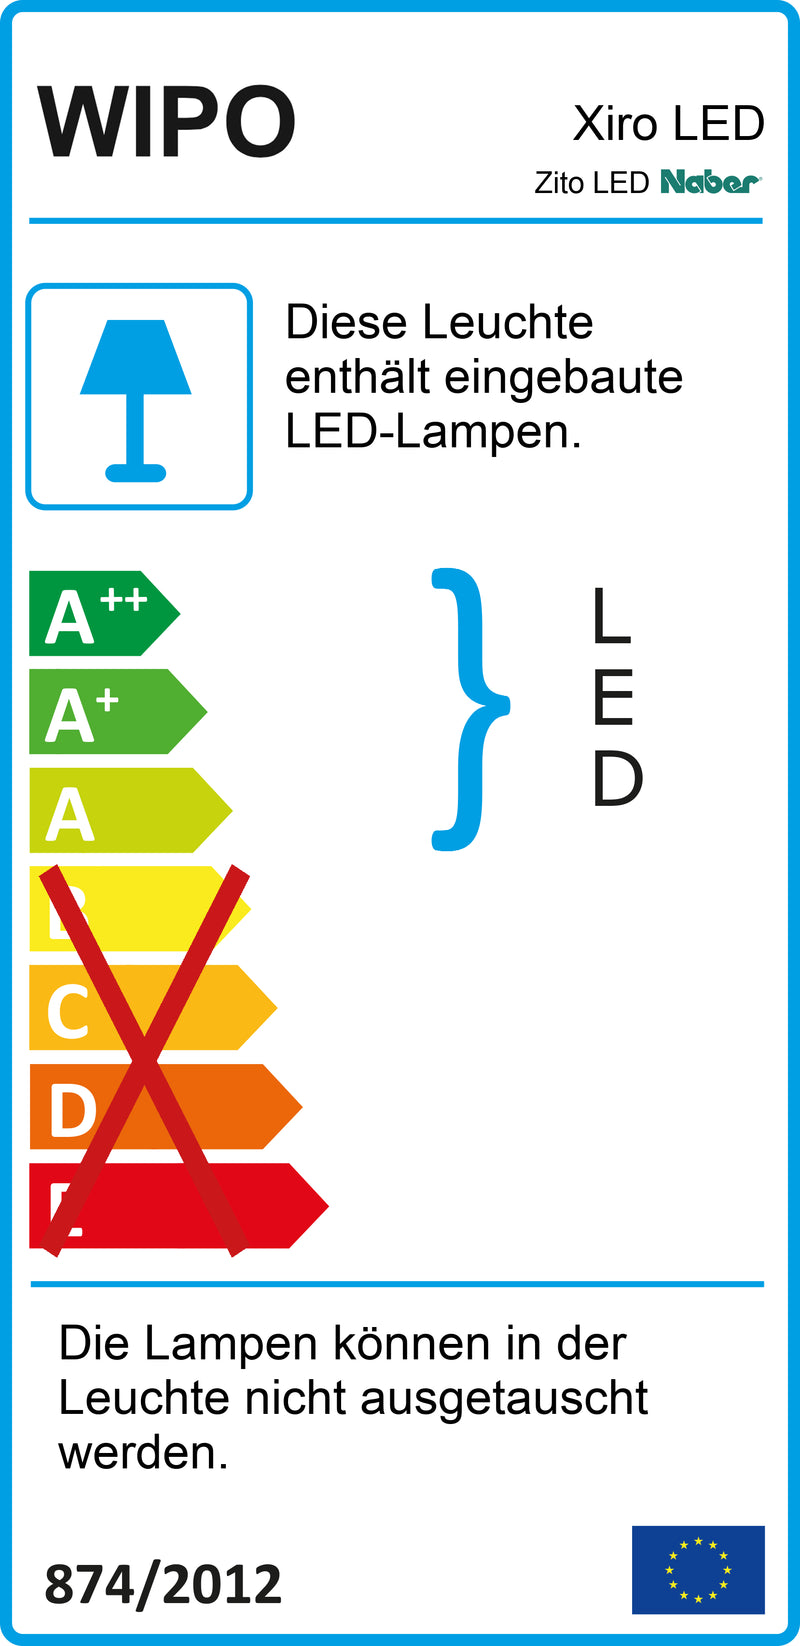 E-Label zu Zeichnung zu Zito LED als Variante L 900 mm, 13 W, schwarz matt von Naber GmbH in der Kategorie Lichttechnik in Österreich auf conceptshop.at